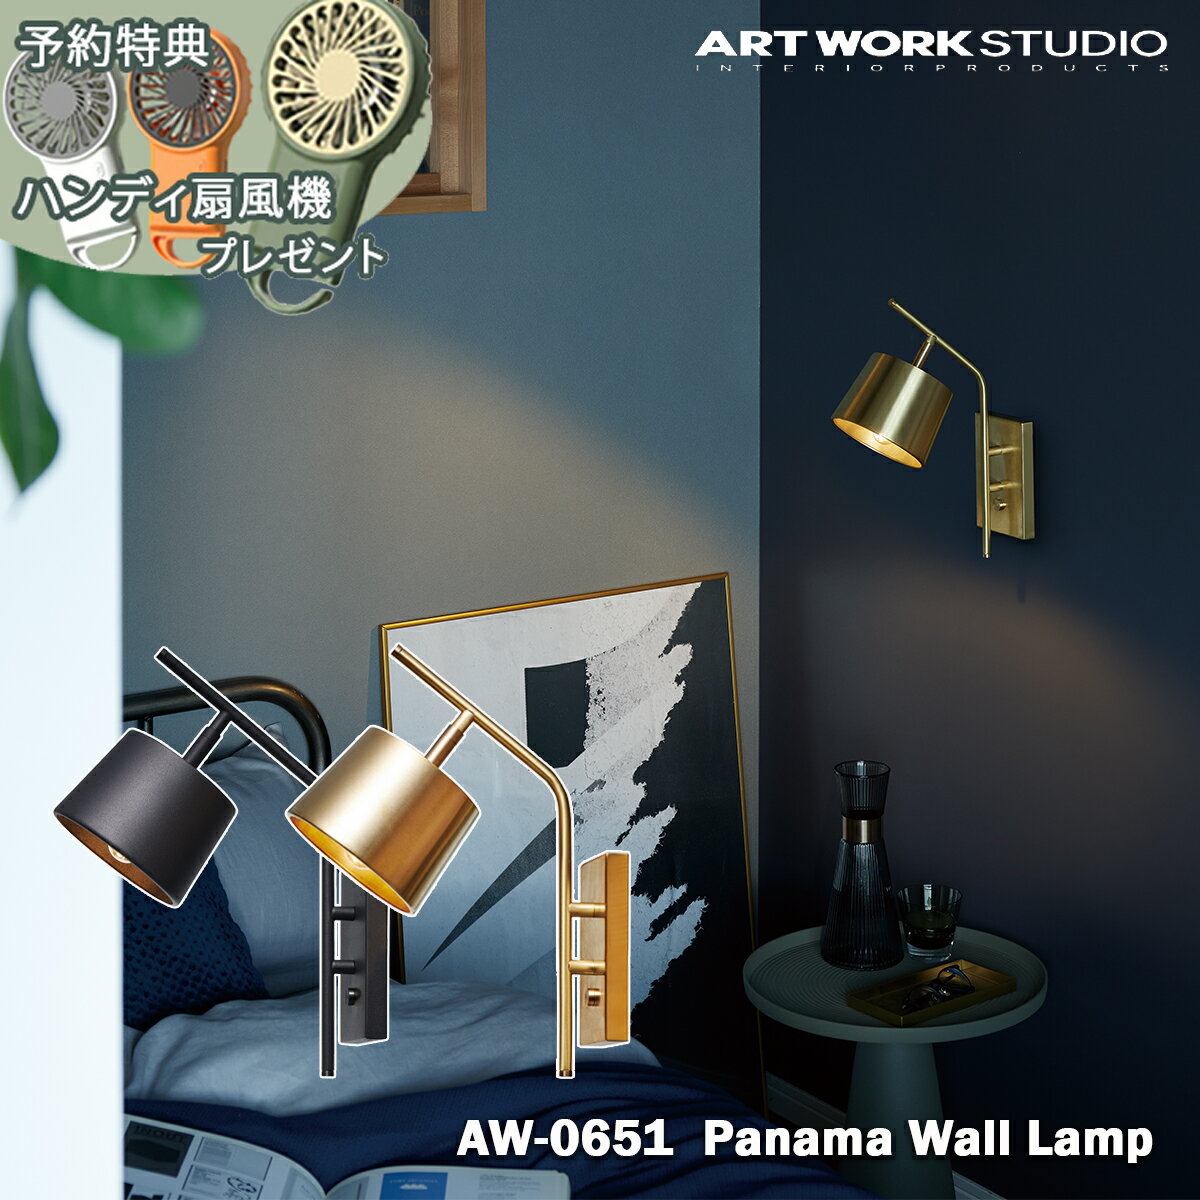 予約特典付き【レビューでプレゼント】ARTWORK STUDIO Panama-wall lamp AW-0651 パナマウォールランプ ウォールランプ 玄関 廊下 階段 ベットサイド 真鍮 LED電球 壁付け照明 ブラケットライト アートワークスタジオ おしゃれ